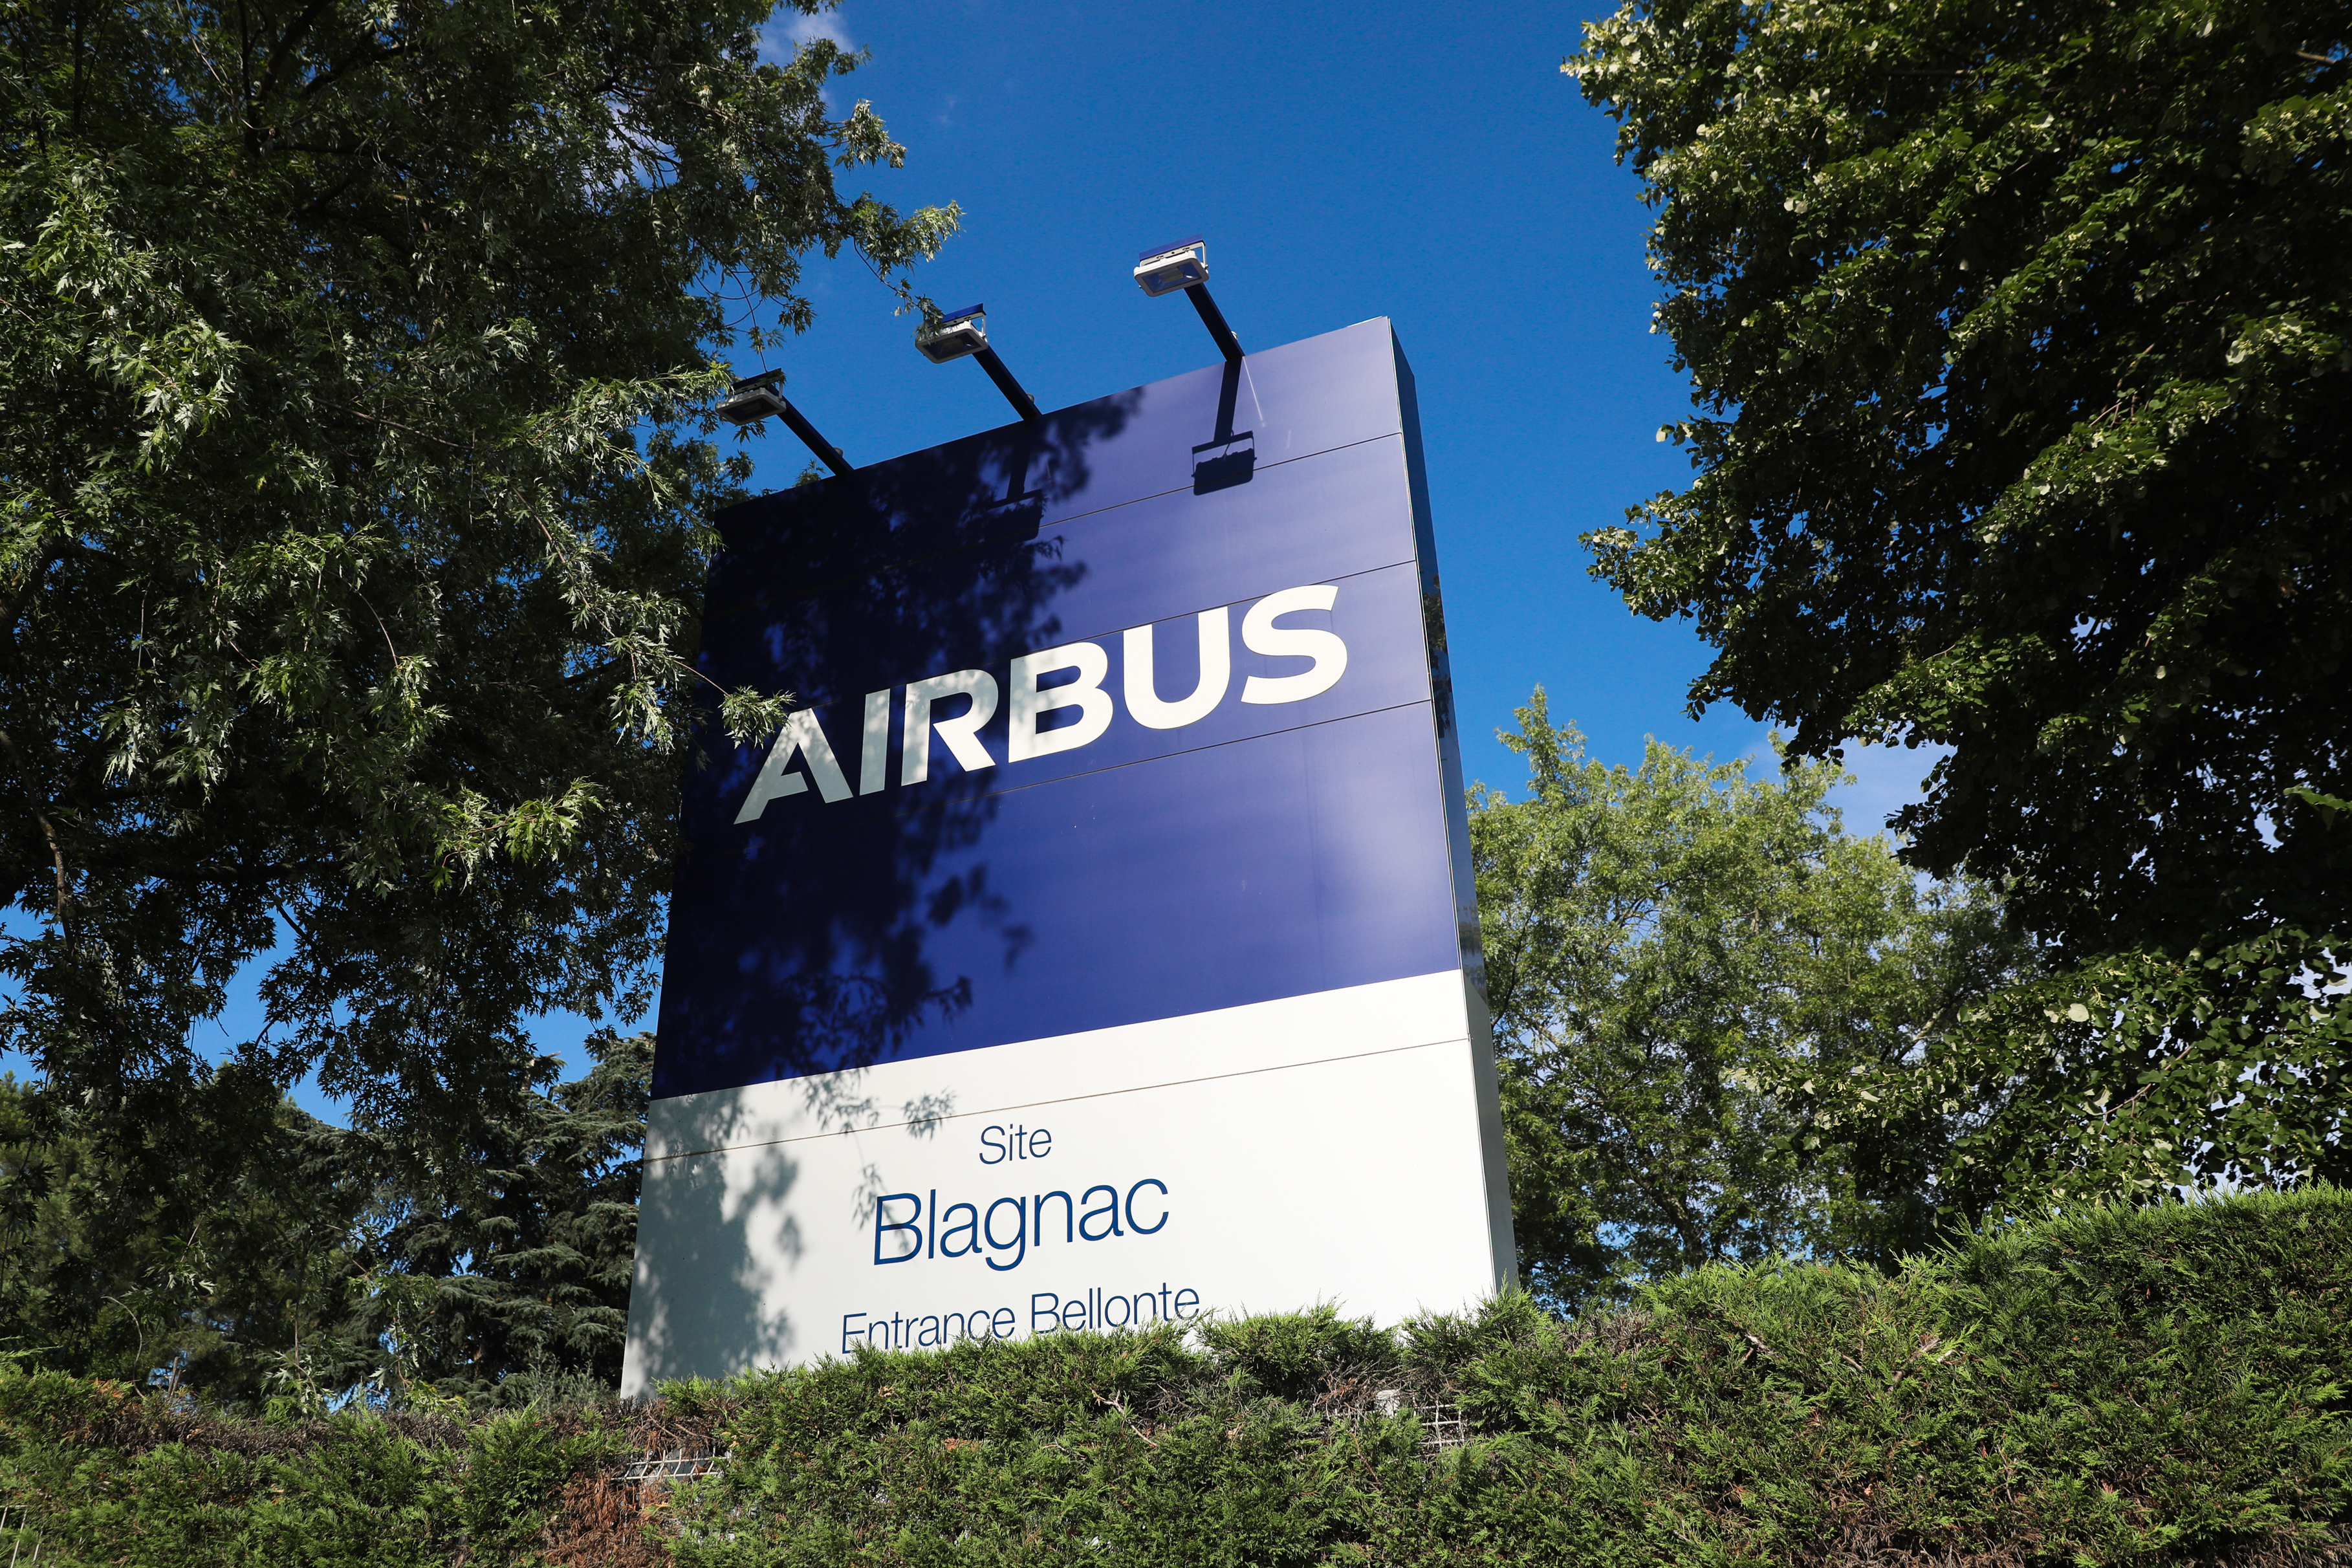 Fini le Bizlab et place à Airbus Scale : l'avionneur européen bouscule sa politique d'innovation